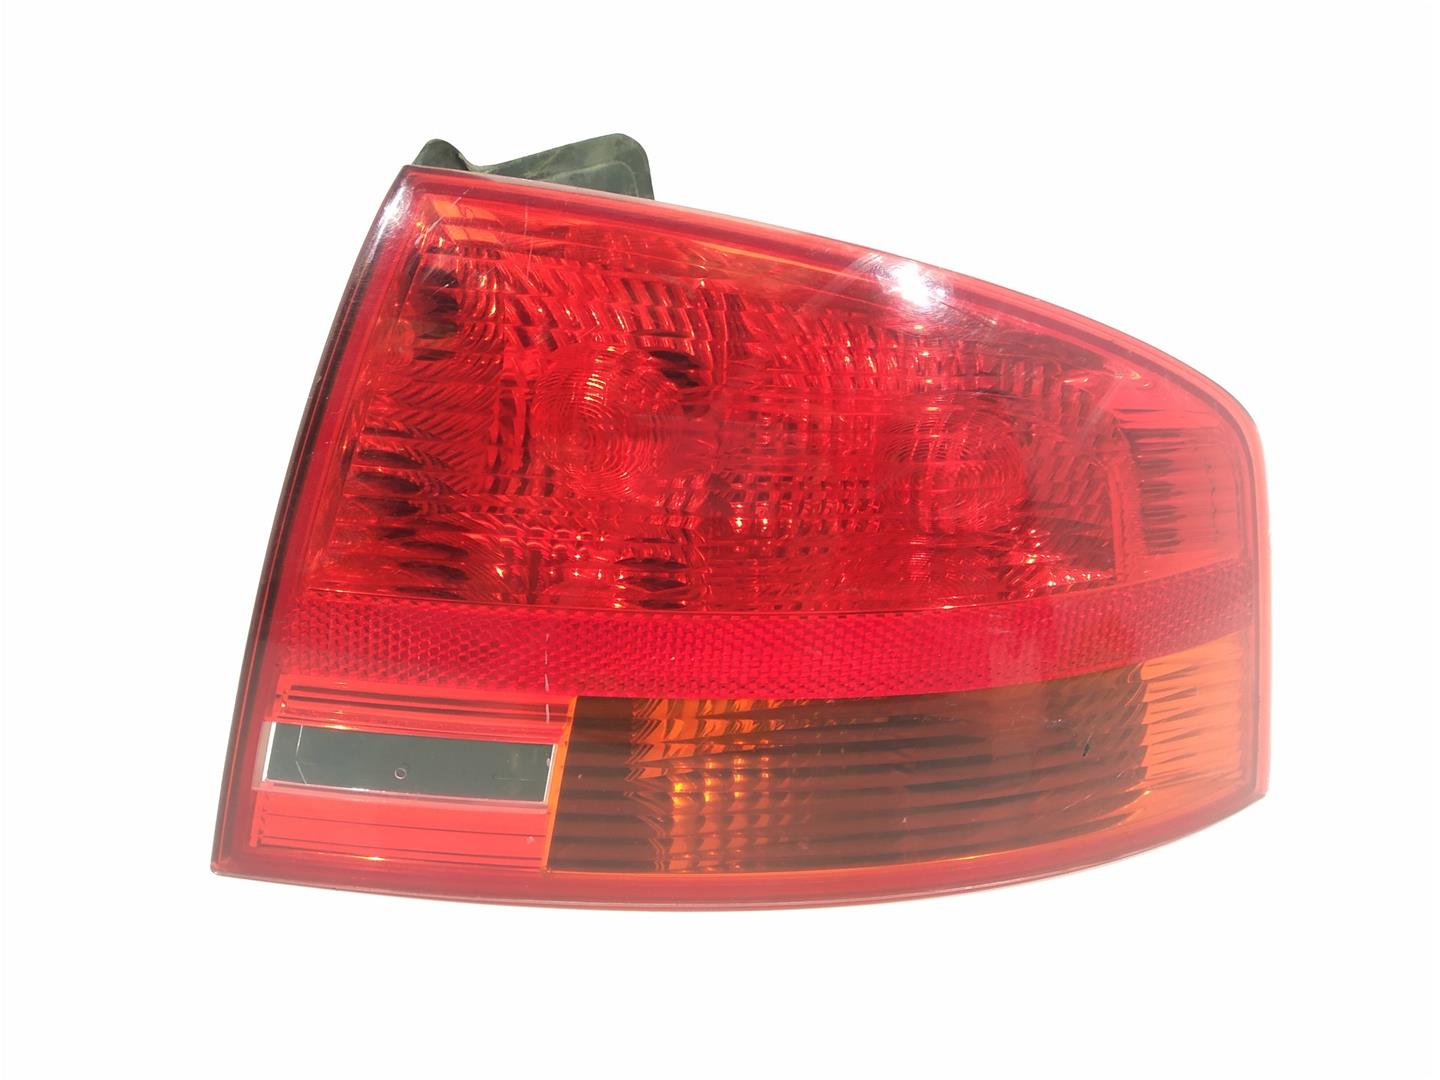 AUDI A4 B6/8E (2000-2005) Rear Right Taillight Lamp 8E5945096, 8E5945096, 8E5945096 19307448